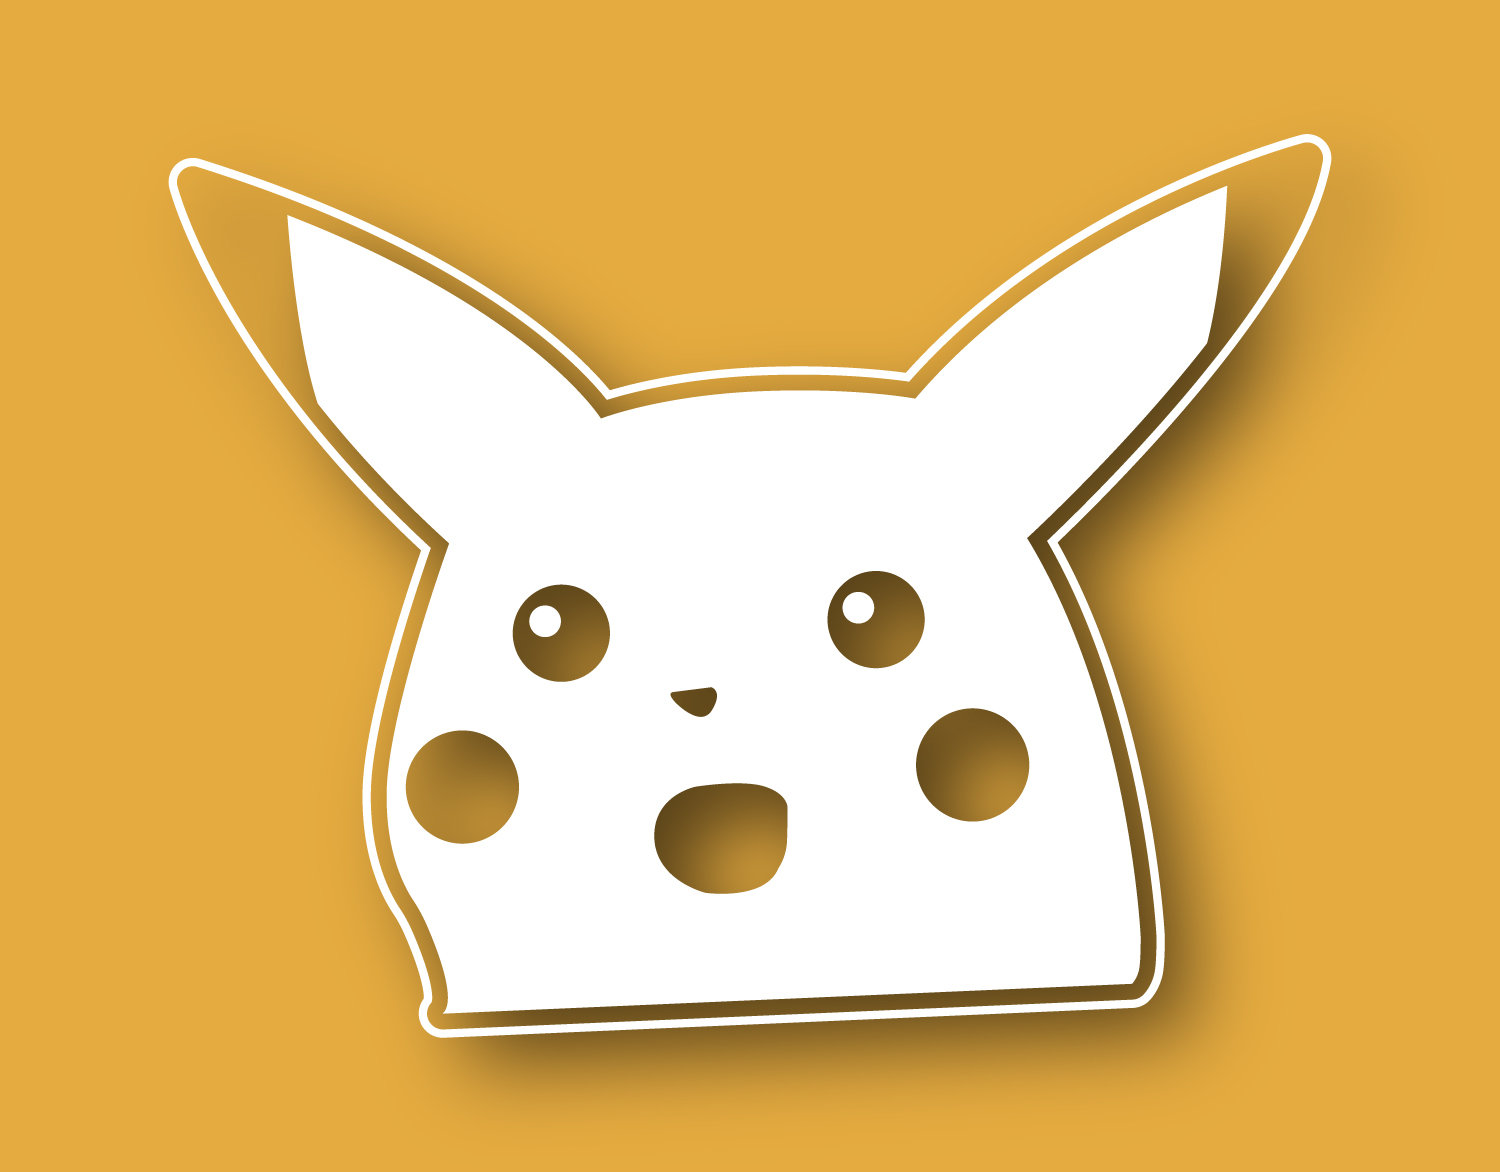 x2) Surprised Pikachu Bloody :o Sticker Decal Peeker Meme Cute JDM